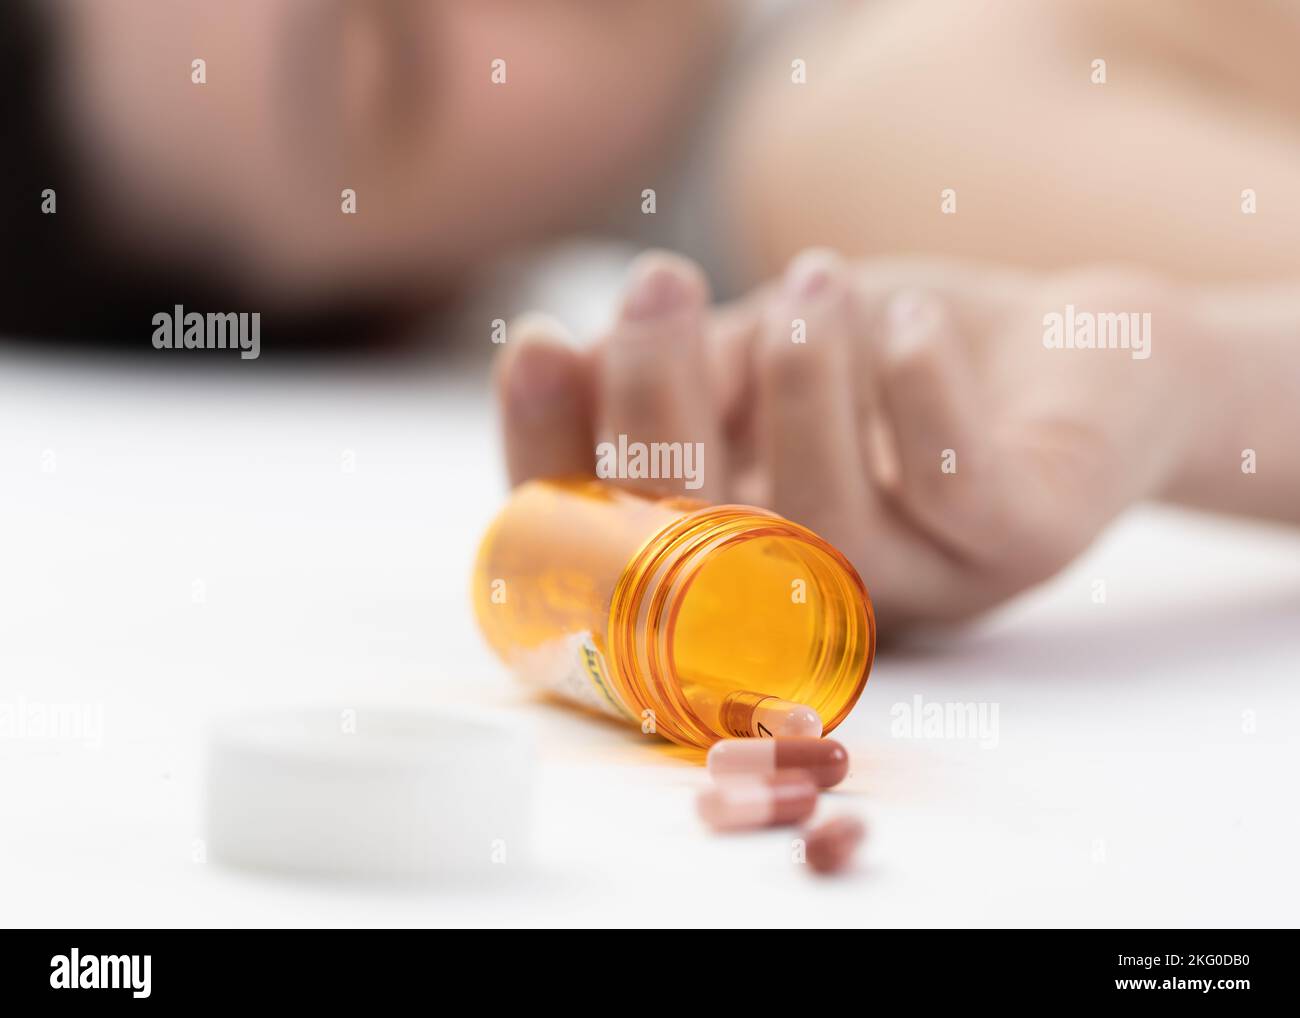 Szene eines Mädchens, das mit einer Überdosis Pille auf dem Boden liegt (absichtlicher selektiver Fokus) Stockfoto